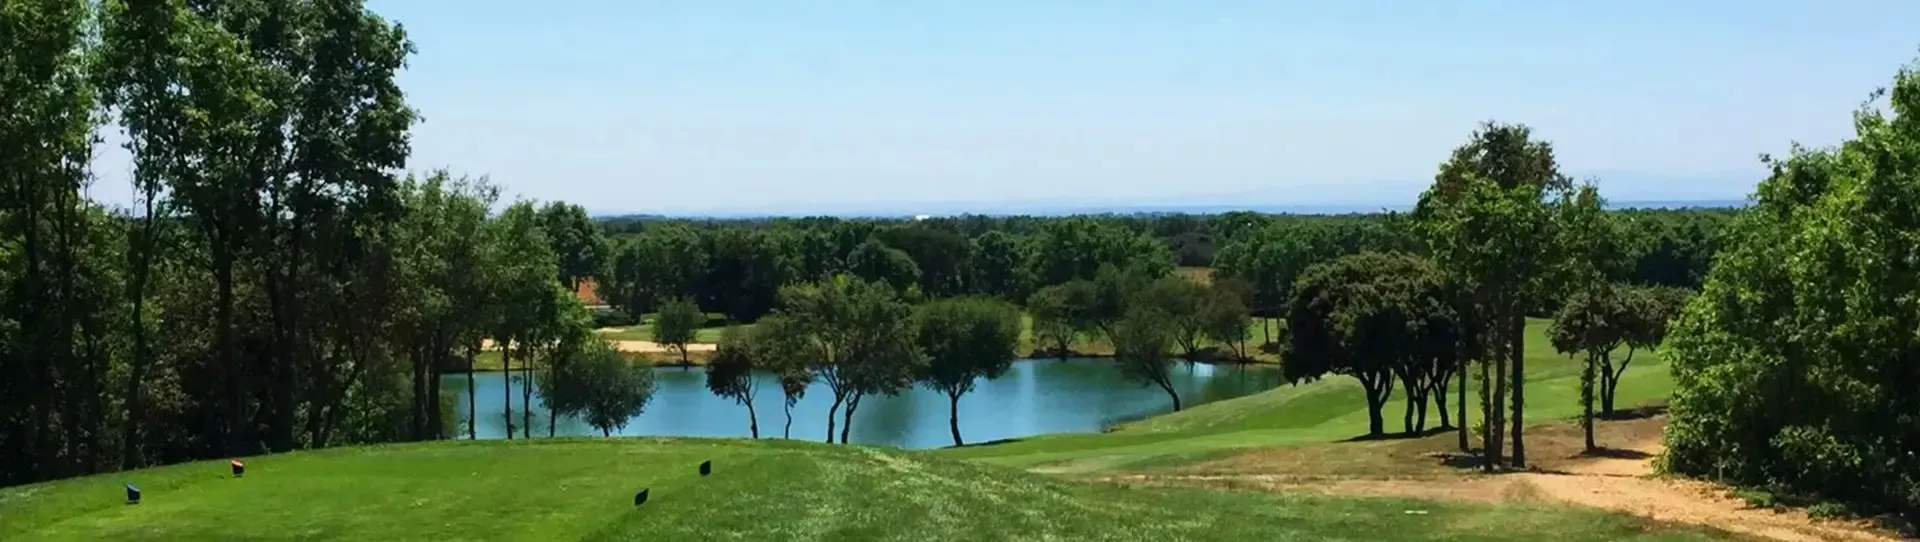 Spain golf courses - León El Cueto Golf Course - Photo 1